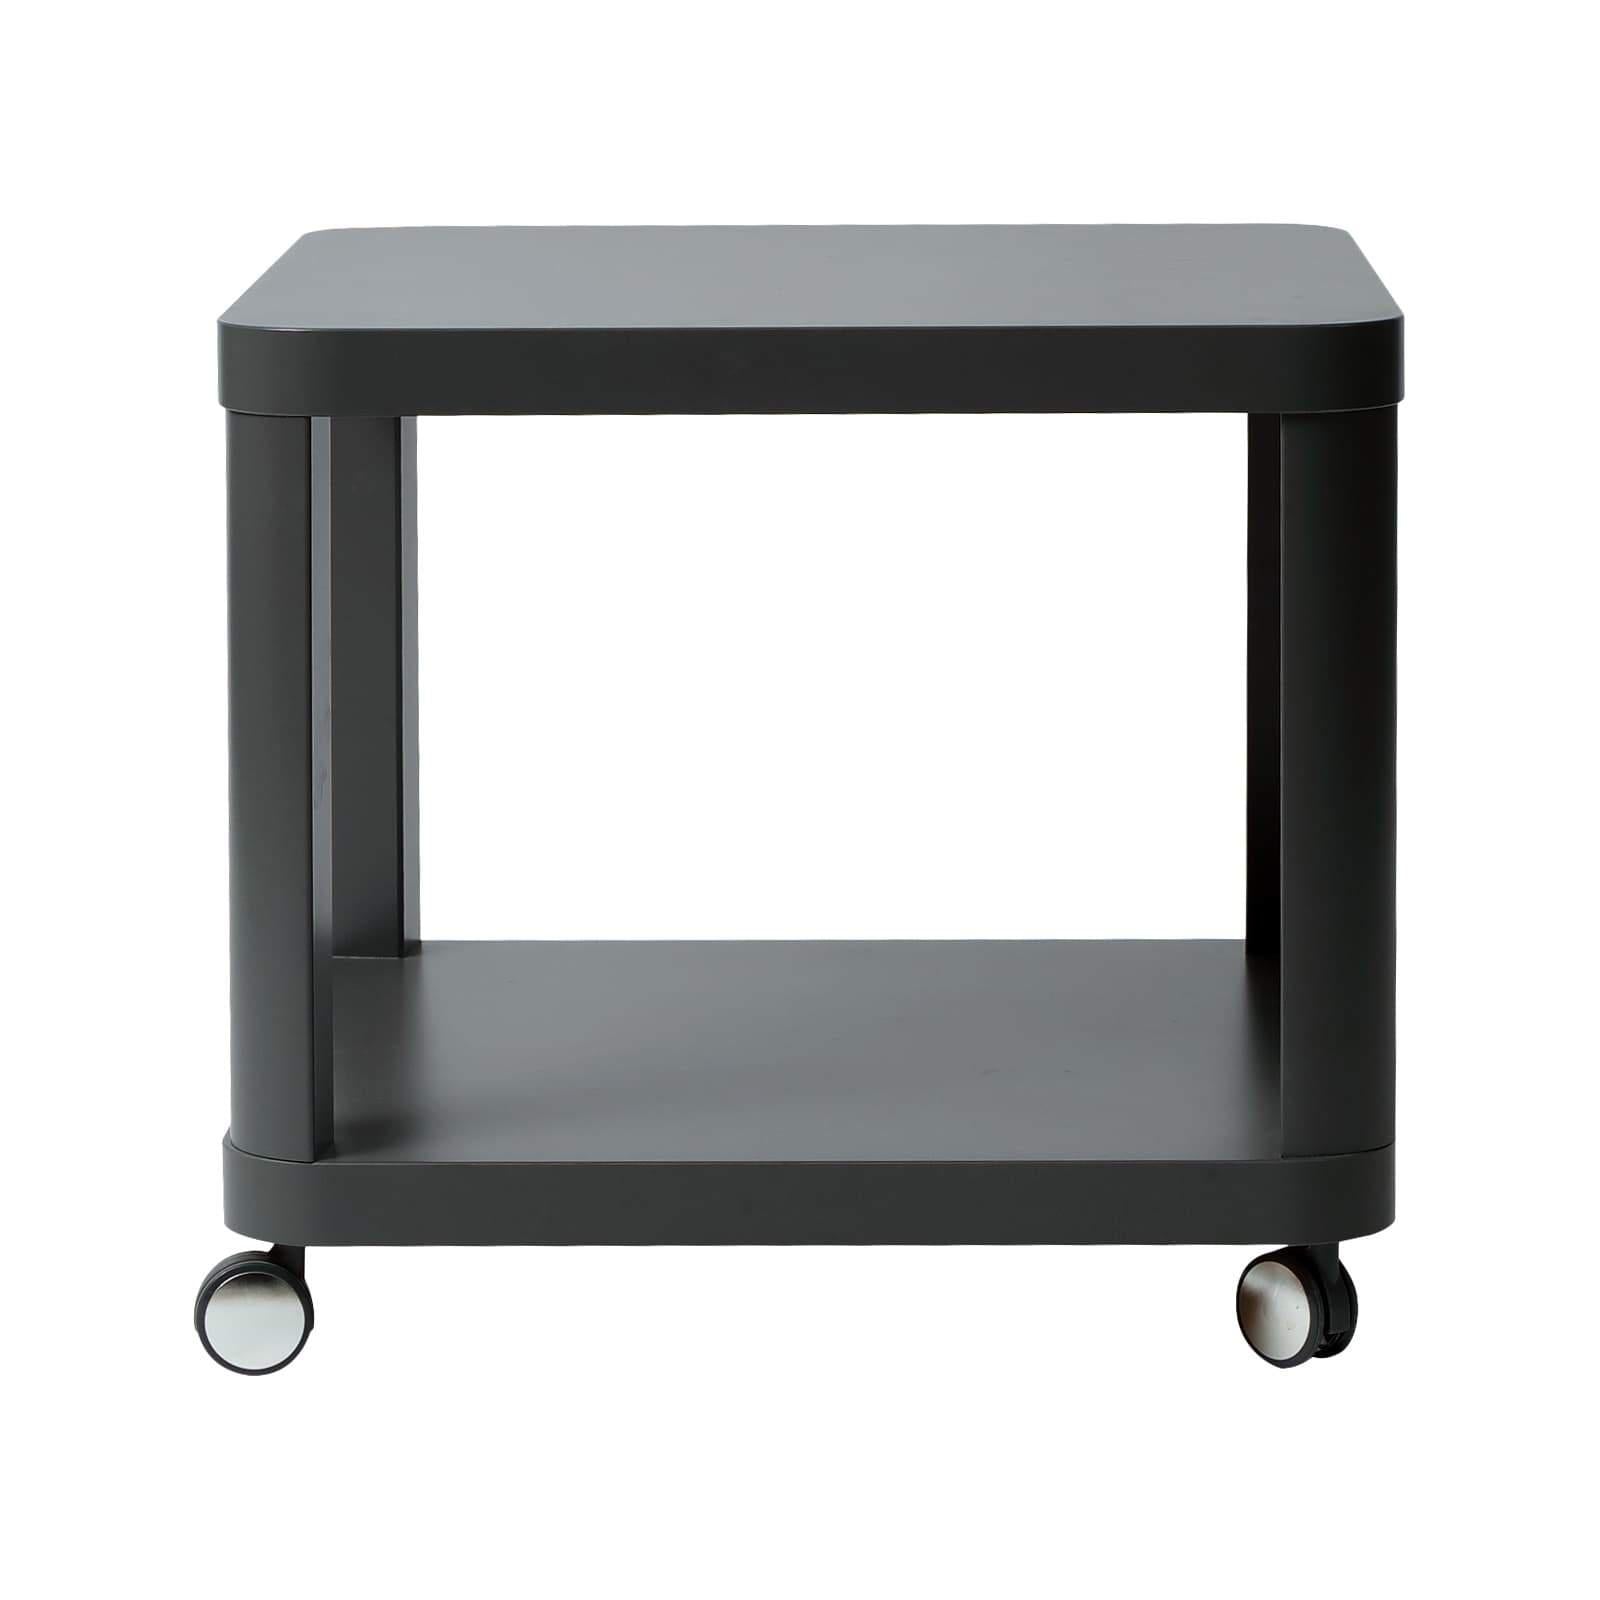 Table basse Ikea d’occasion - 50 x 50 cm - Gris foncé-Bluedigo